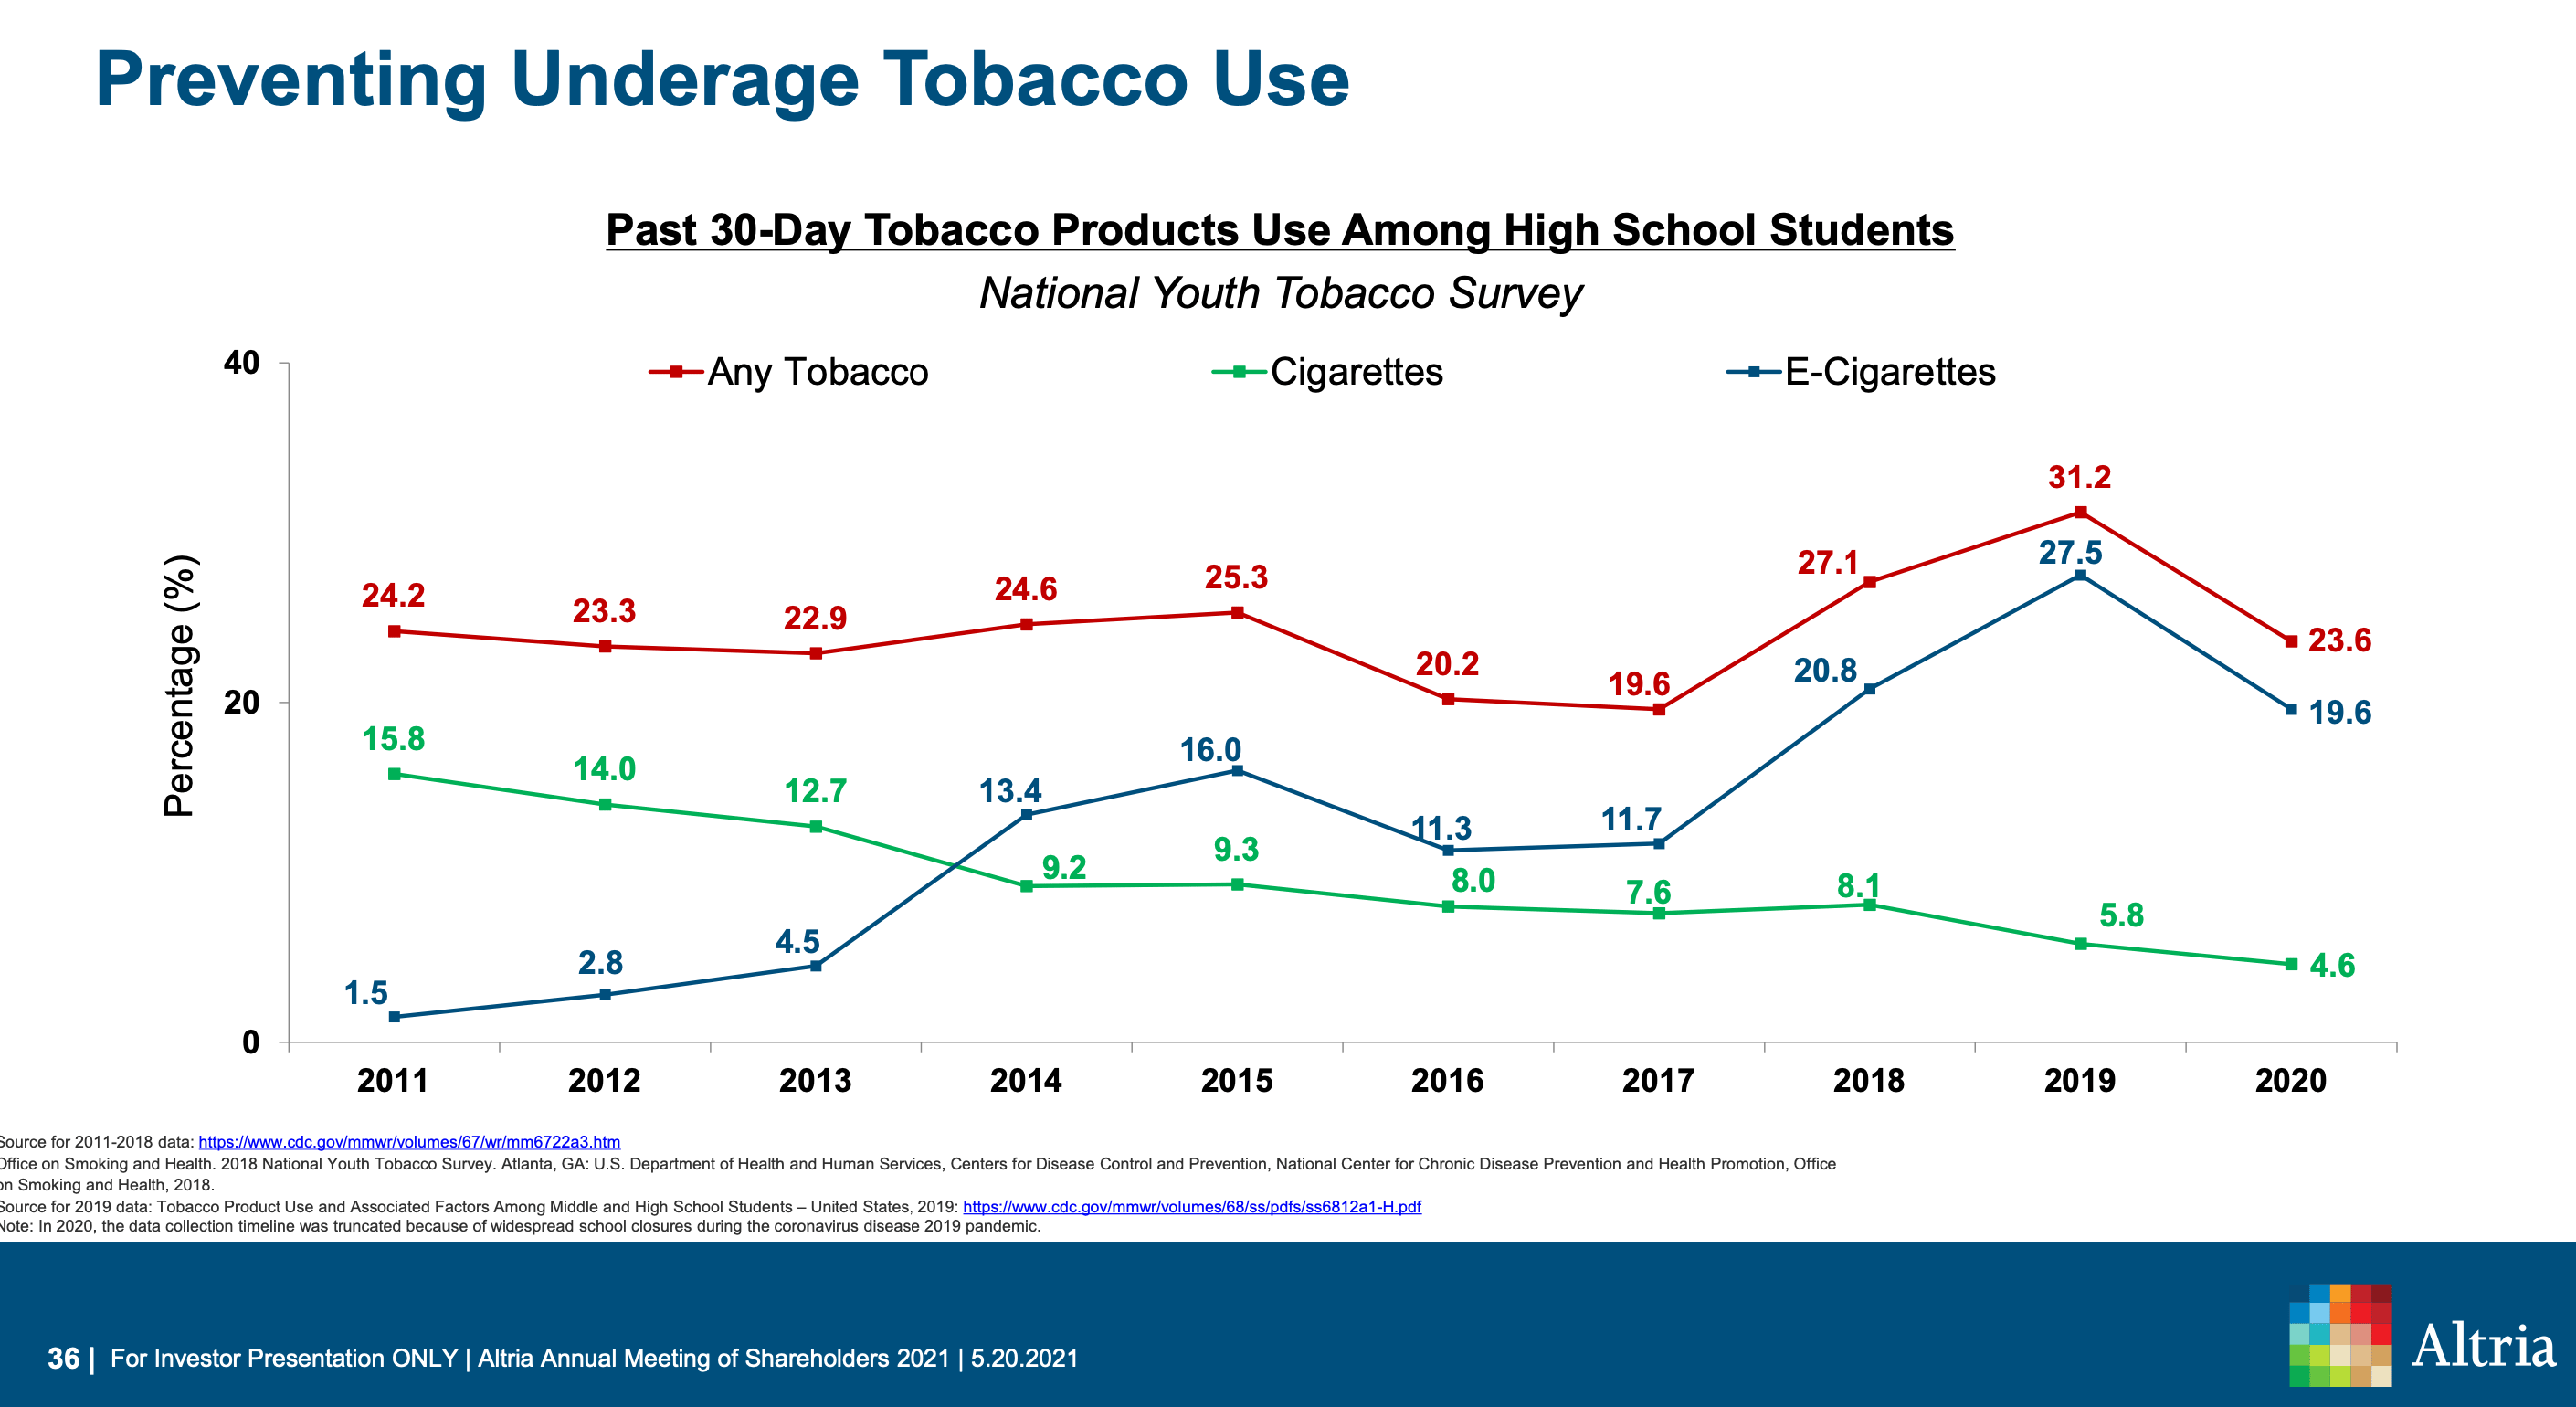 Der Anteil der US High School Students, die Tabak konsumieren, im zeitlichen Verlauf